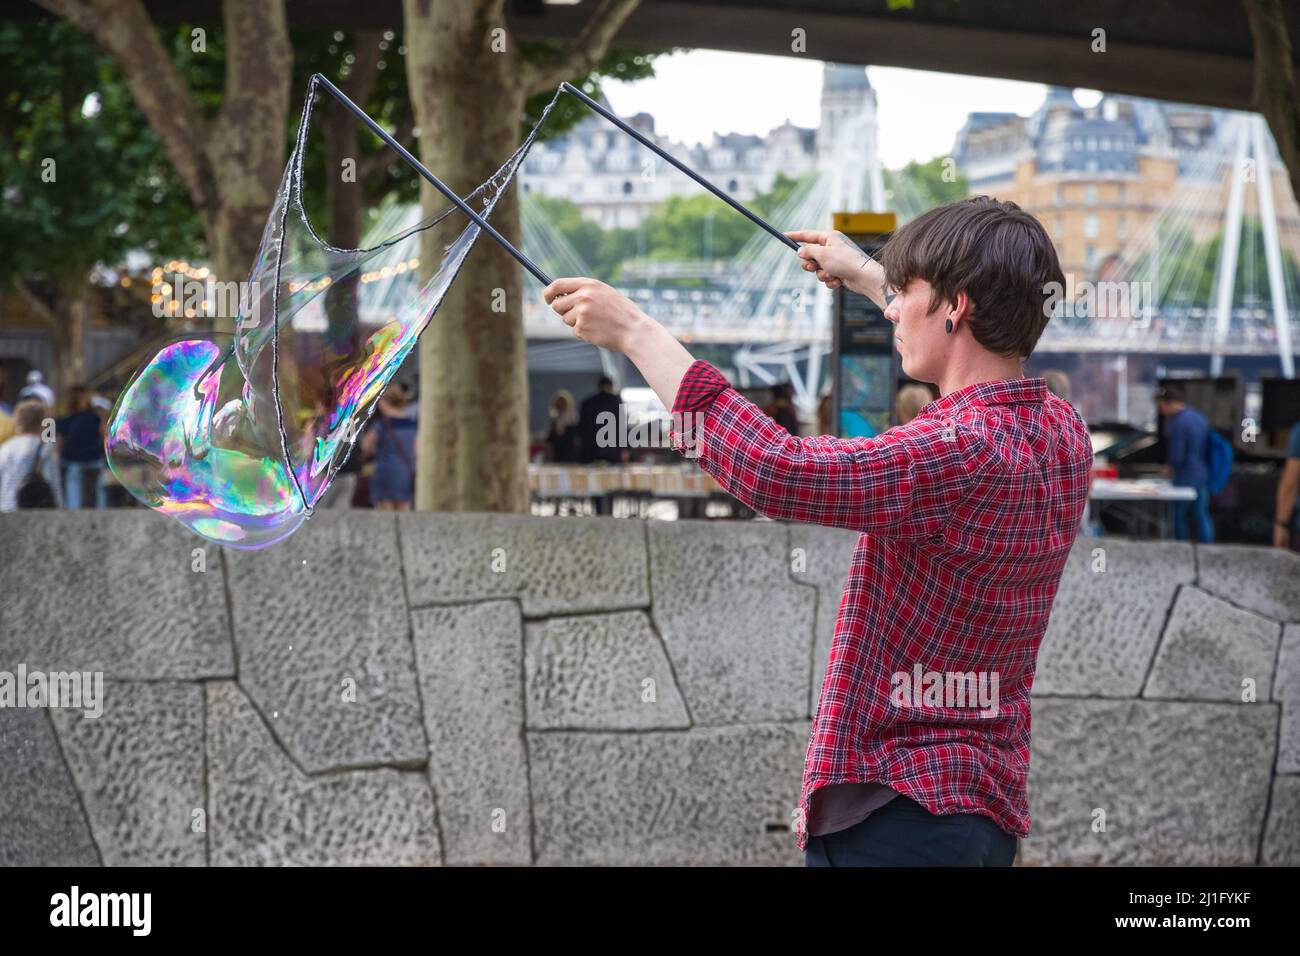 Londres, Royaume-Uni - 19 juillet 2021 - Un artiste de rue de la bulle de savon dans le quartier de South Bank dans le centre de Londres Banque D'Images